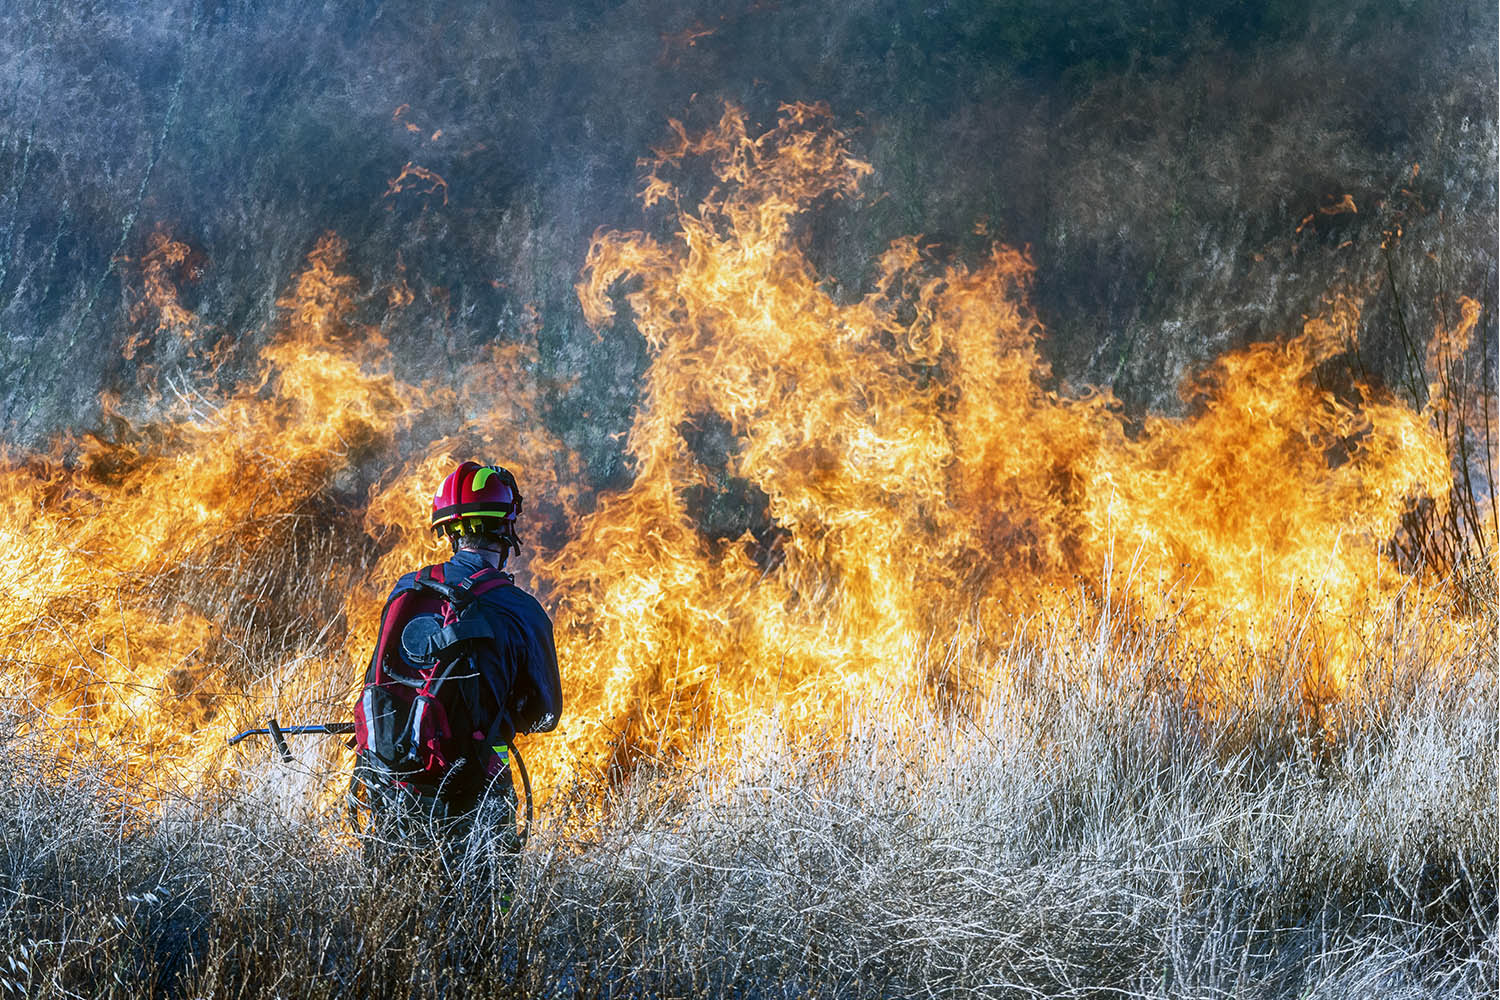 Bombero forestal extinguiendo un fuego.